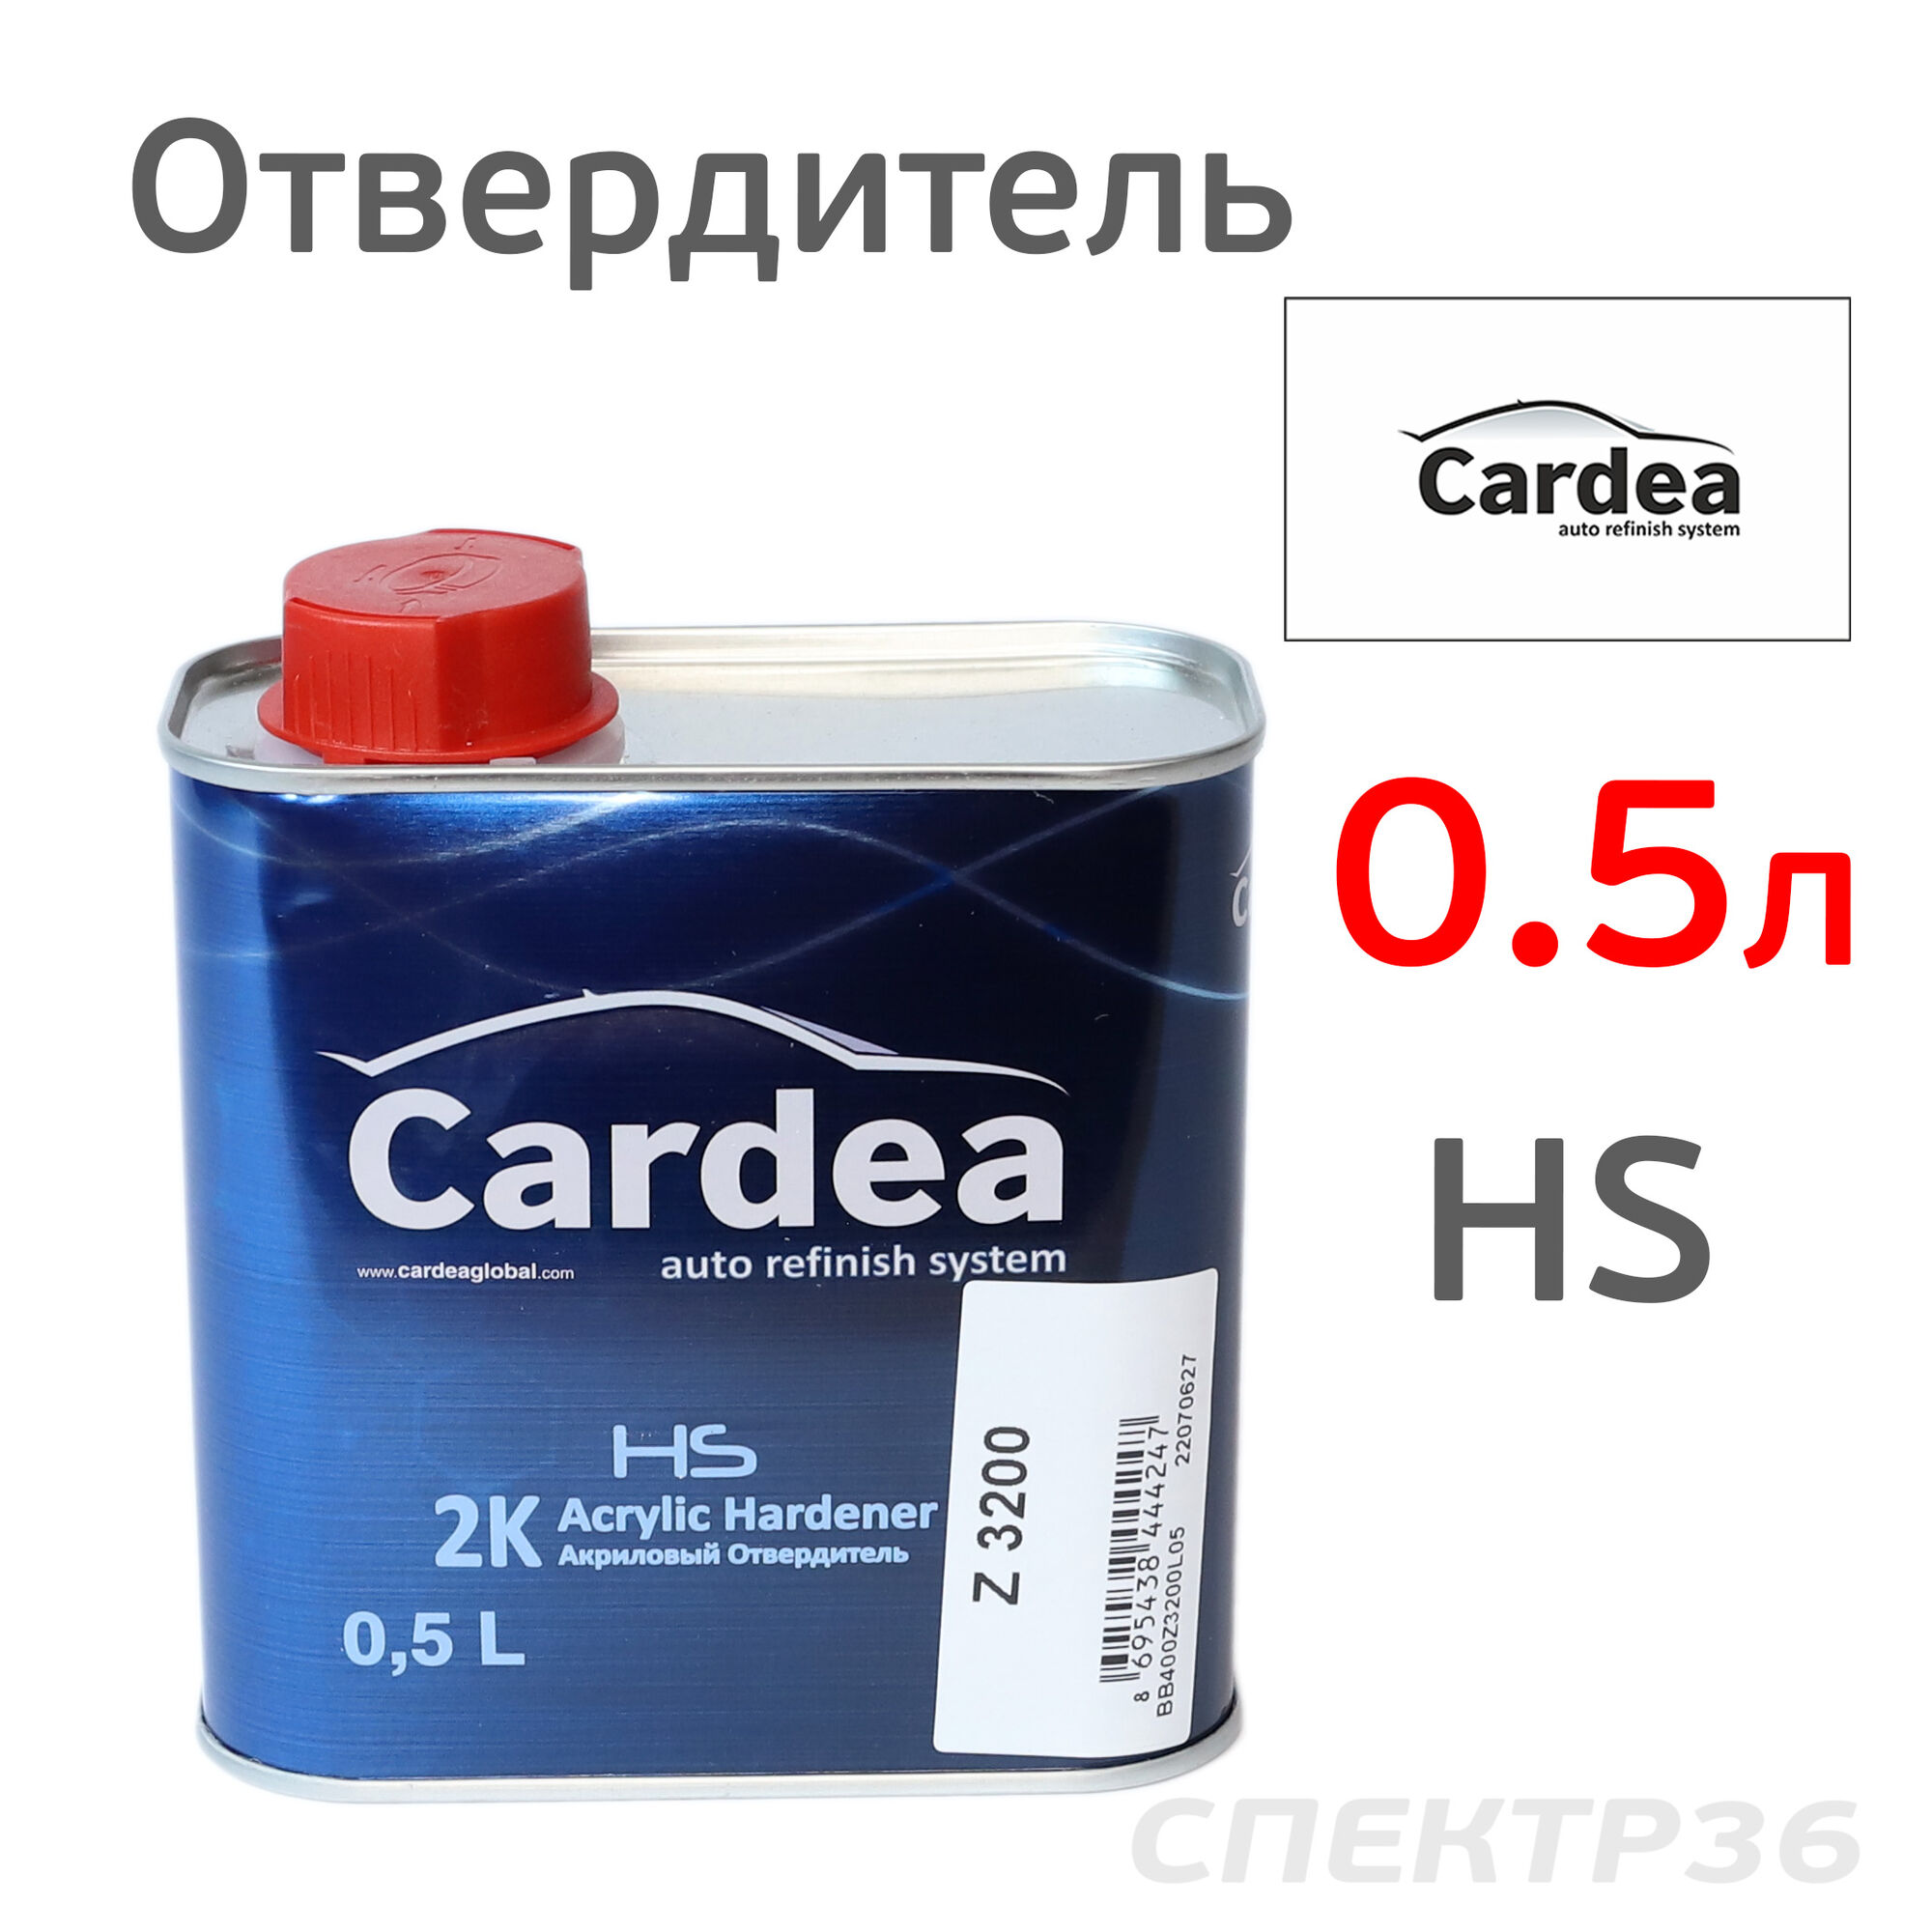 Отвердитель Cardea (0.5л) для лака HS